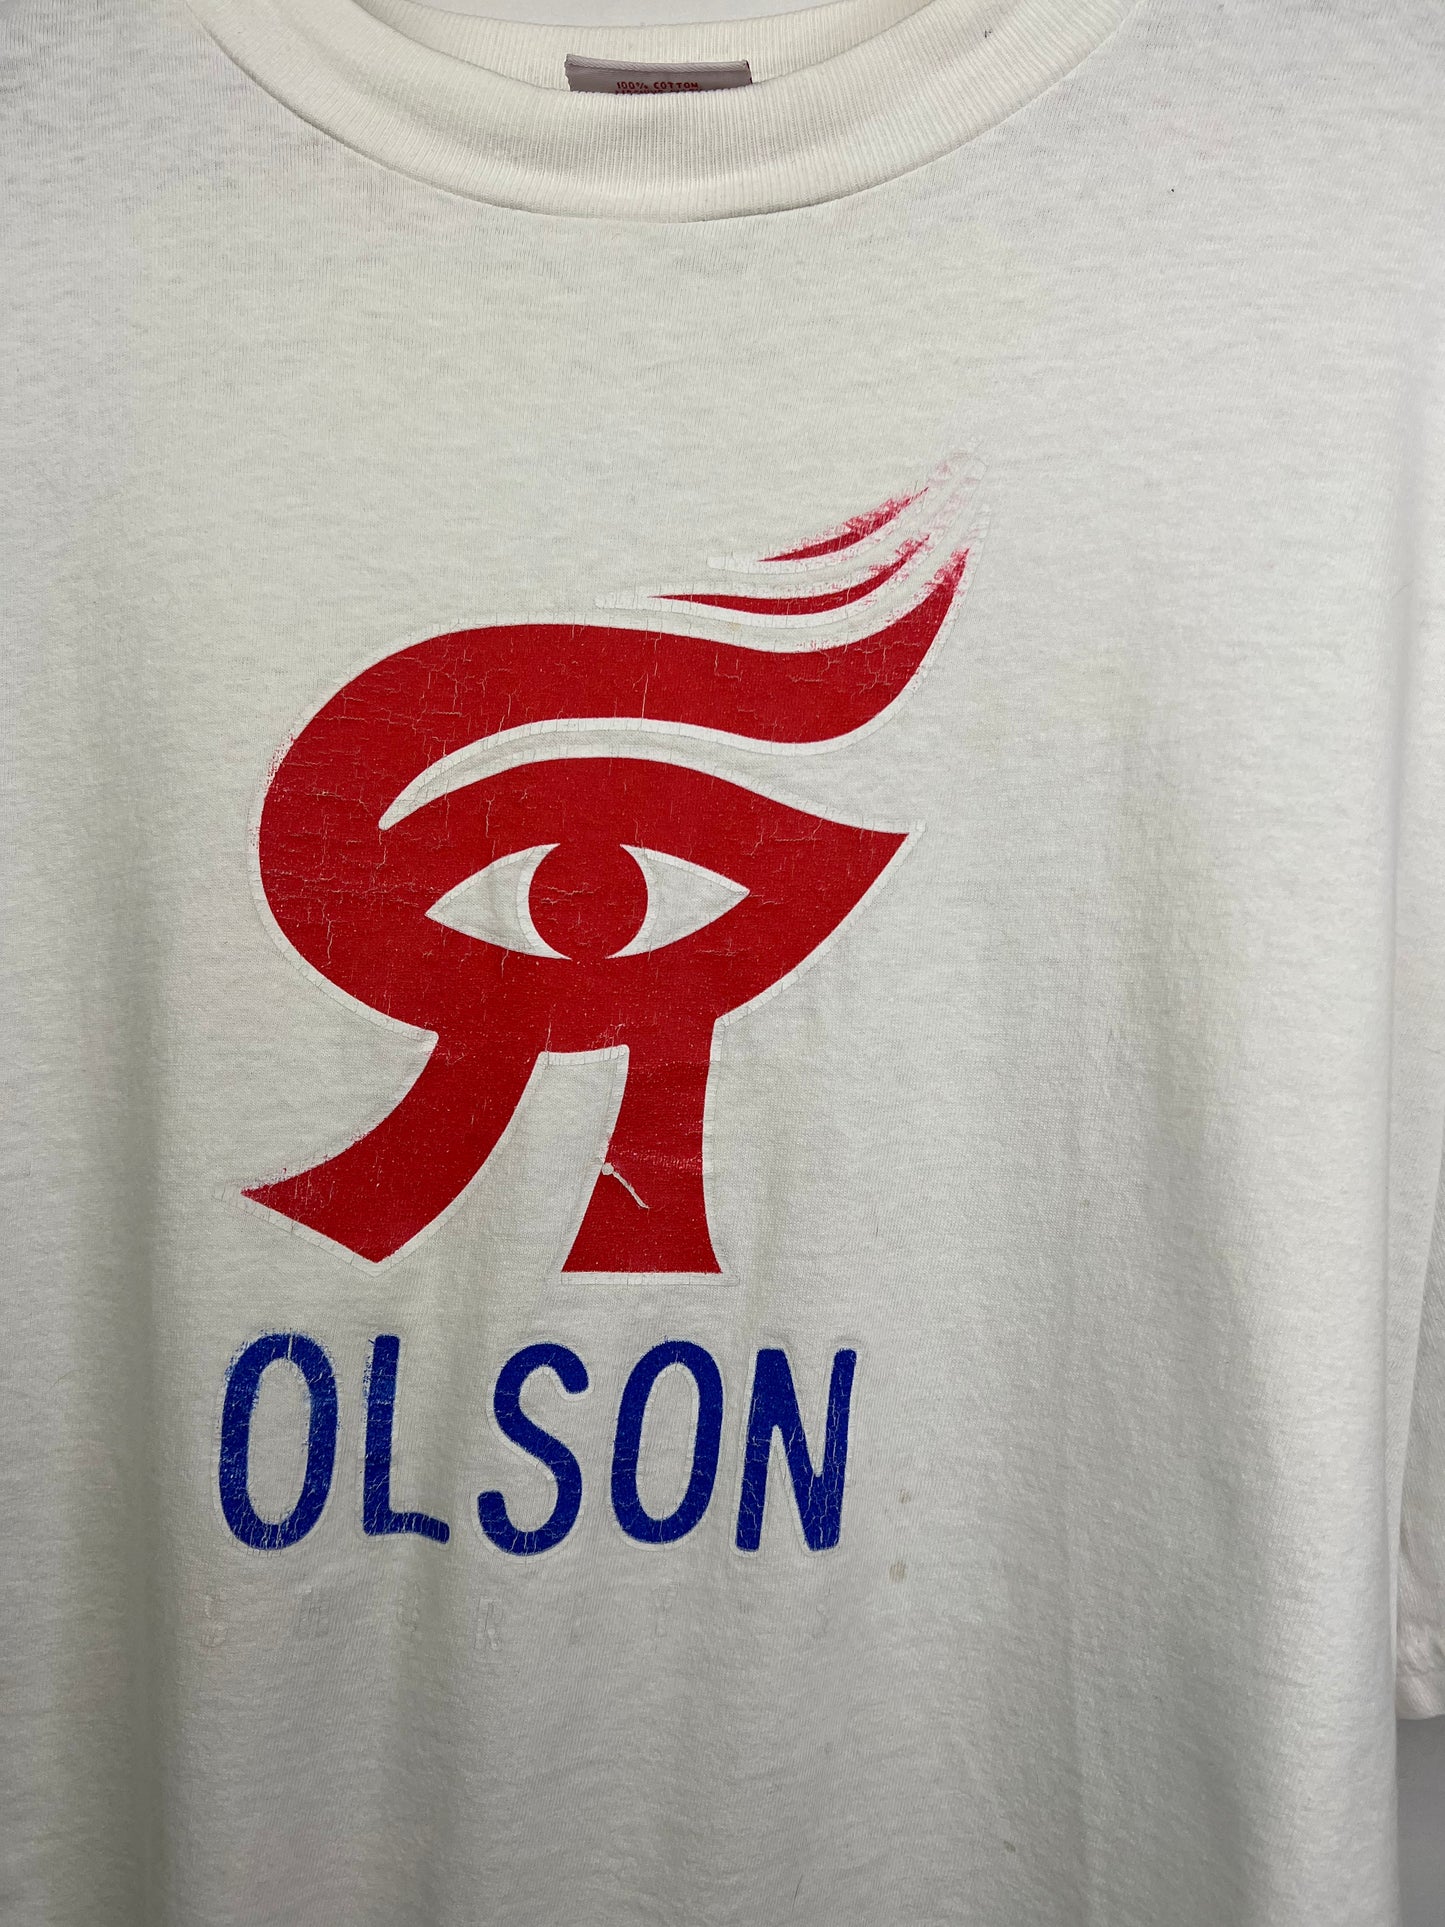 90’s Olson Shortys Deck Skateboarding Logo T-shirt